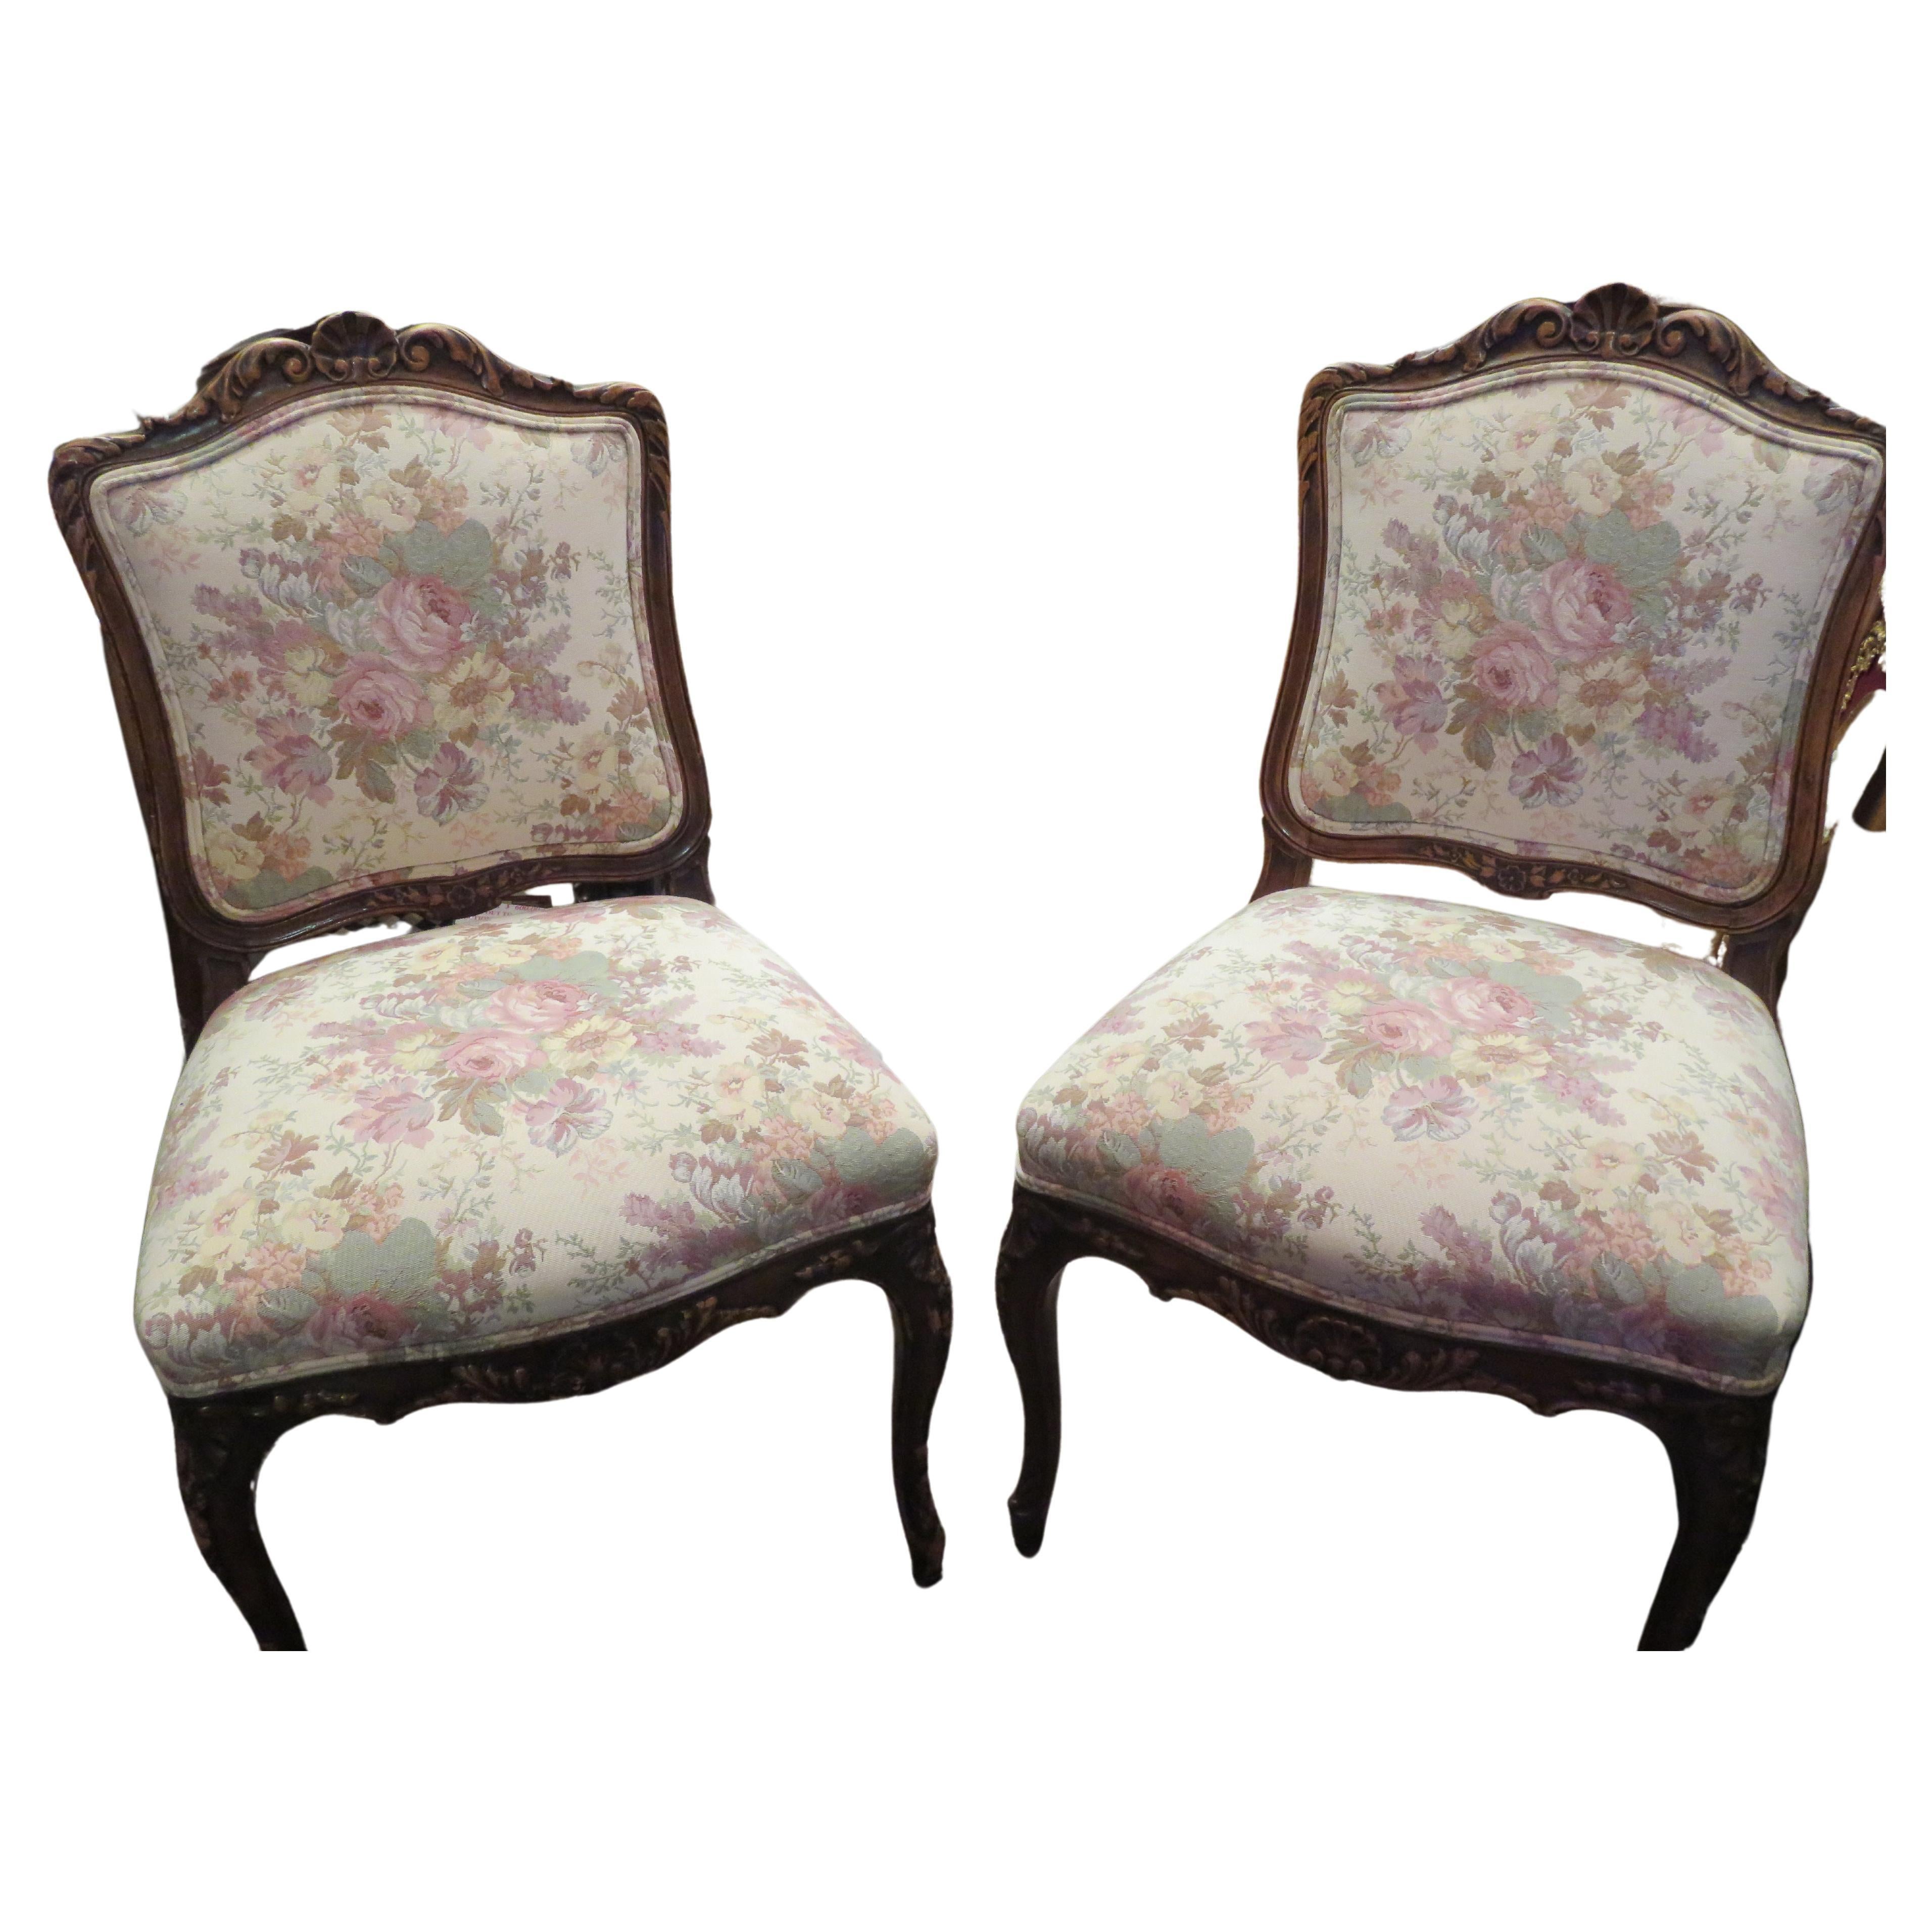 Rare paire de 2 chaises victoriennes sculptées en mahagonie et à fleurs françaises tapissées en vente